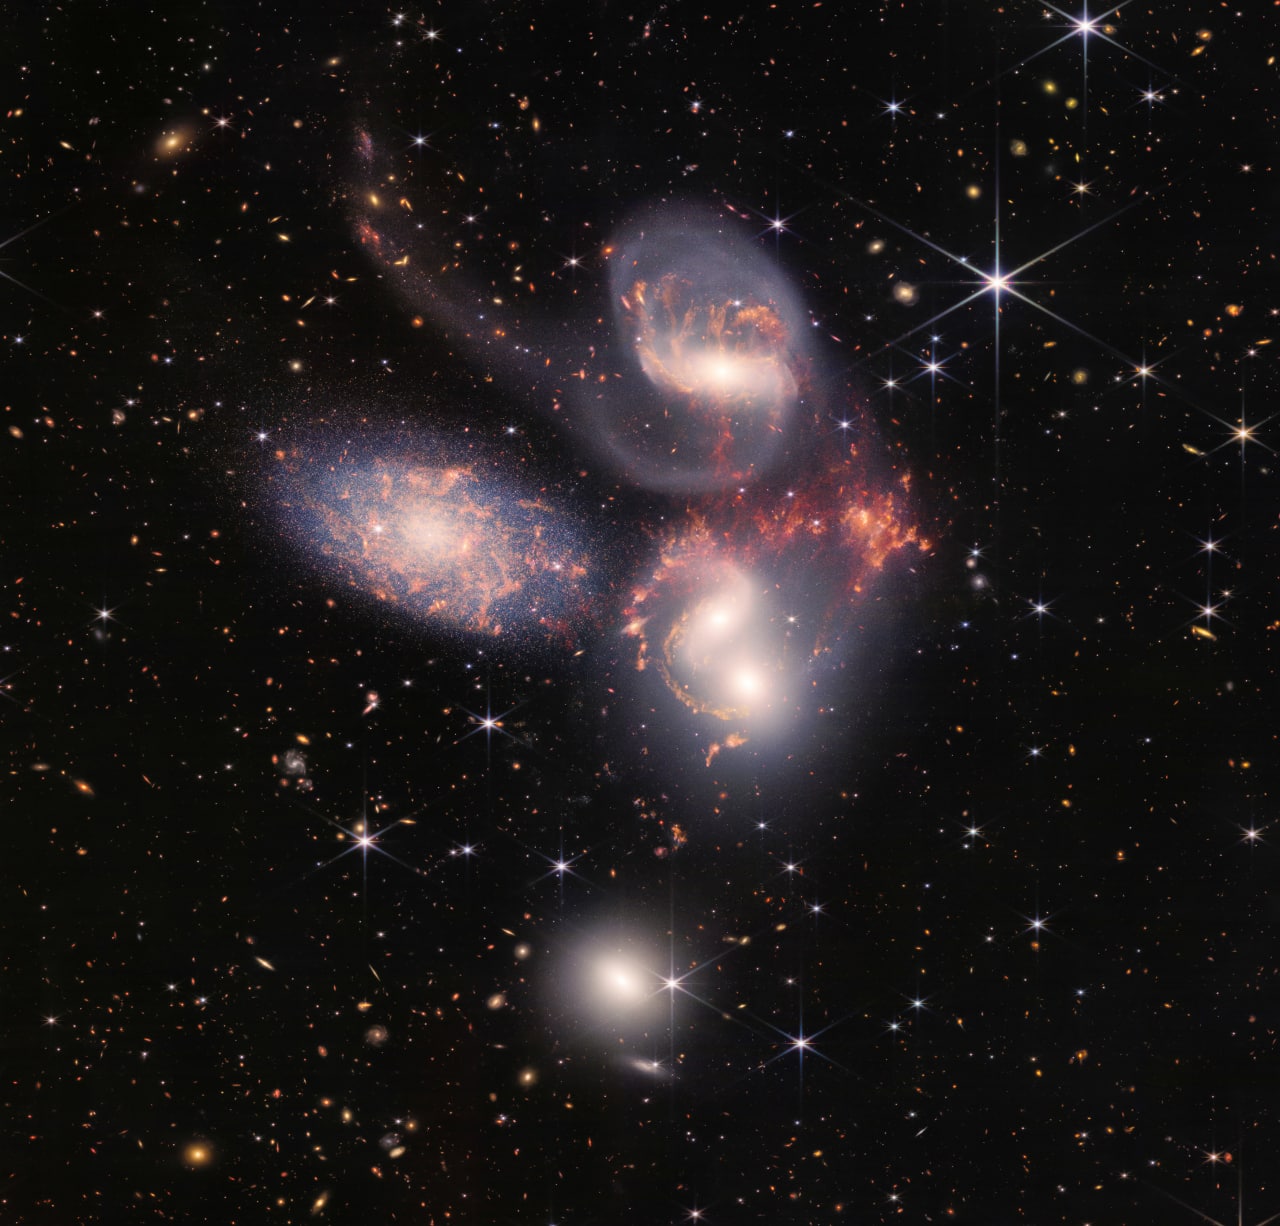 تجمع يعرف باسم "خماسية ستيفان" ويتكون من 5 مجرات قريبة من بعضها اثنتان منها في طور الاندماج